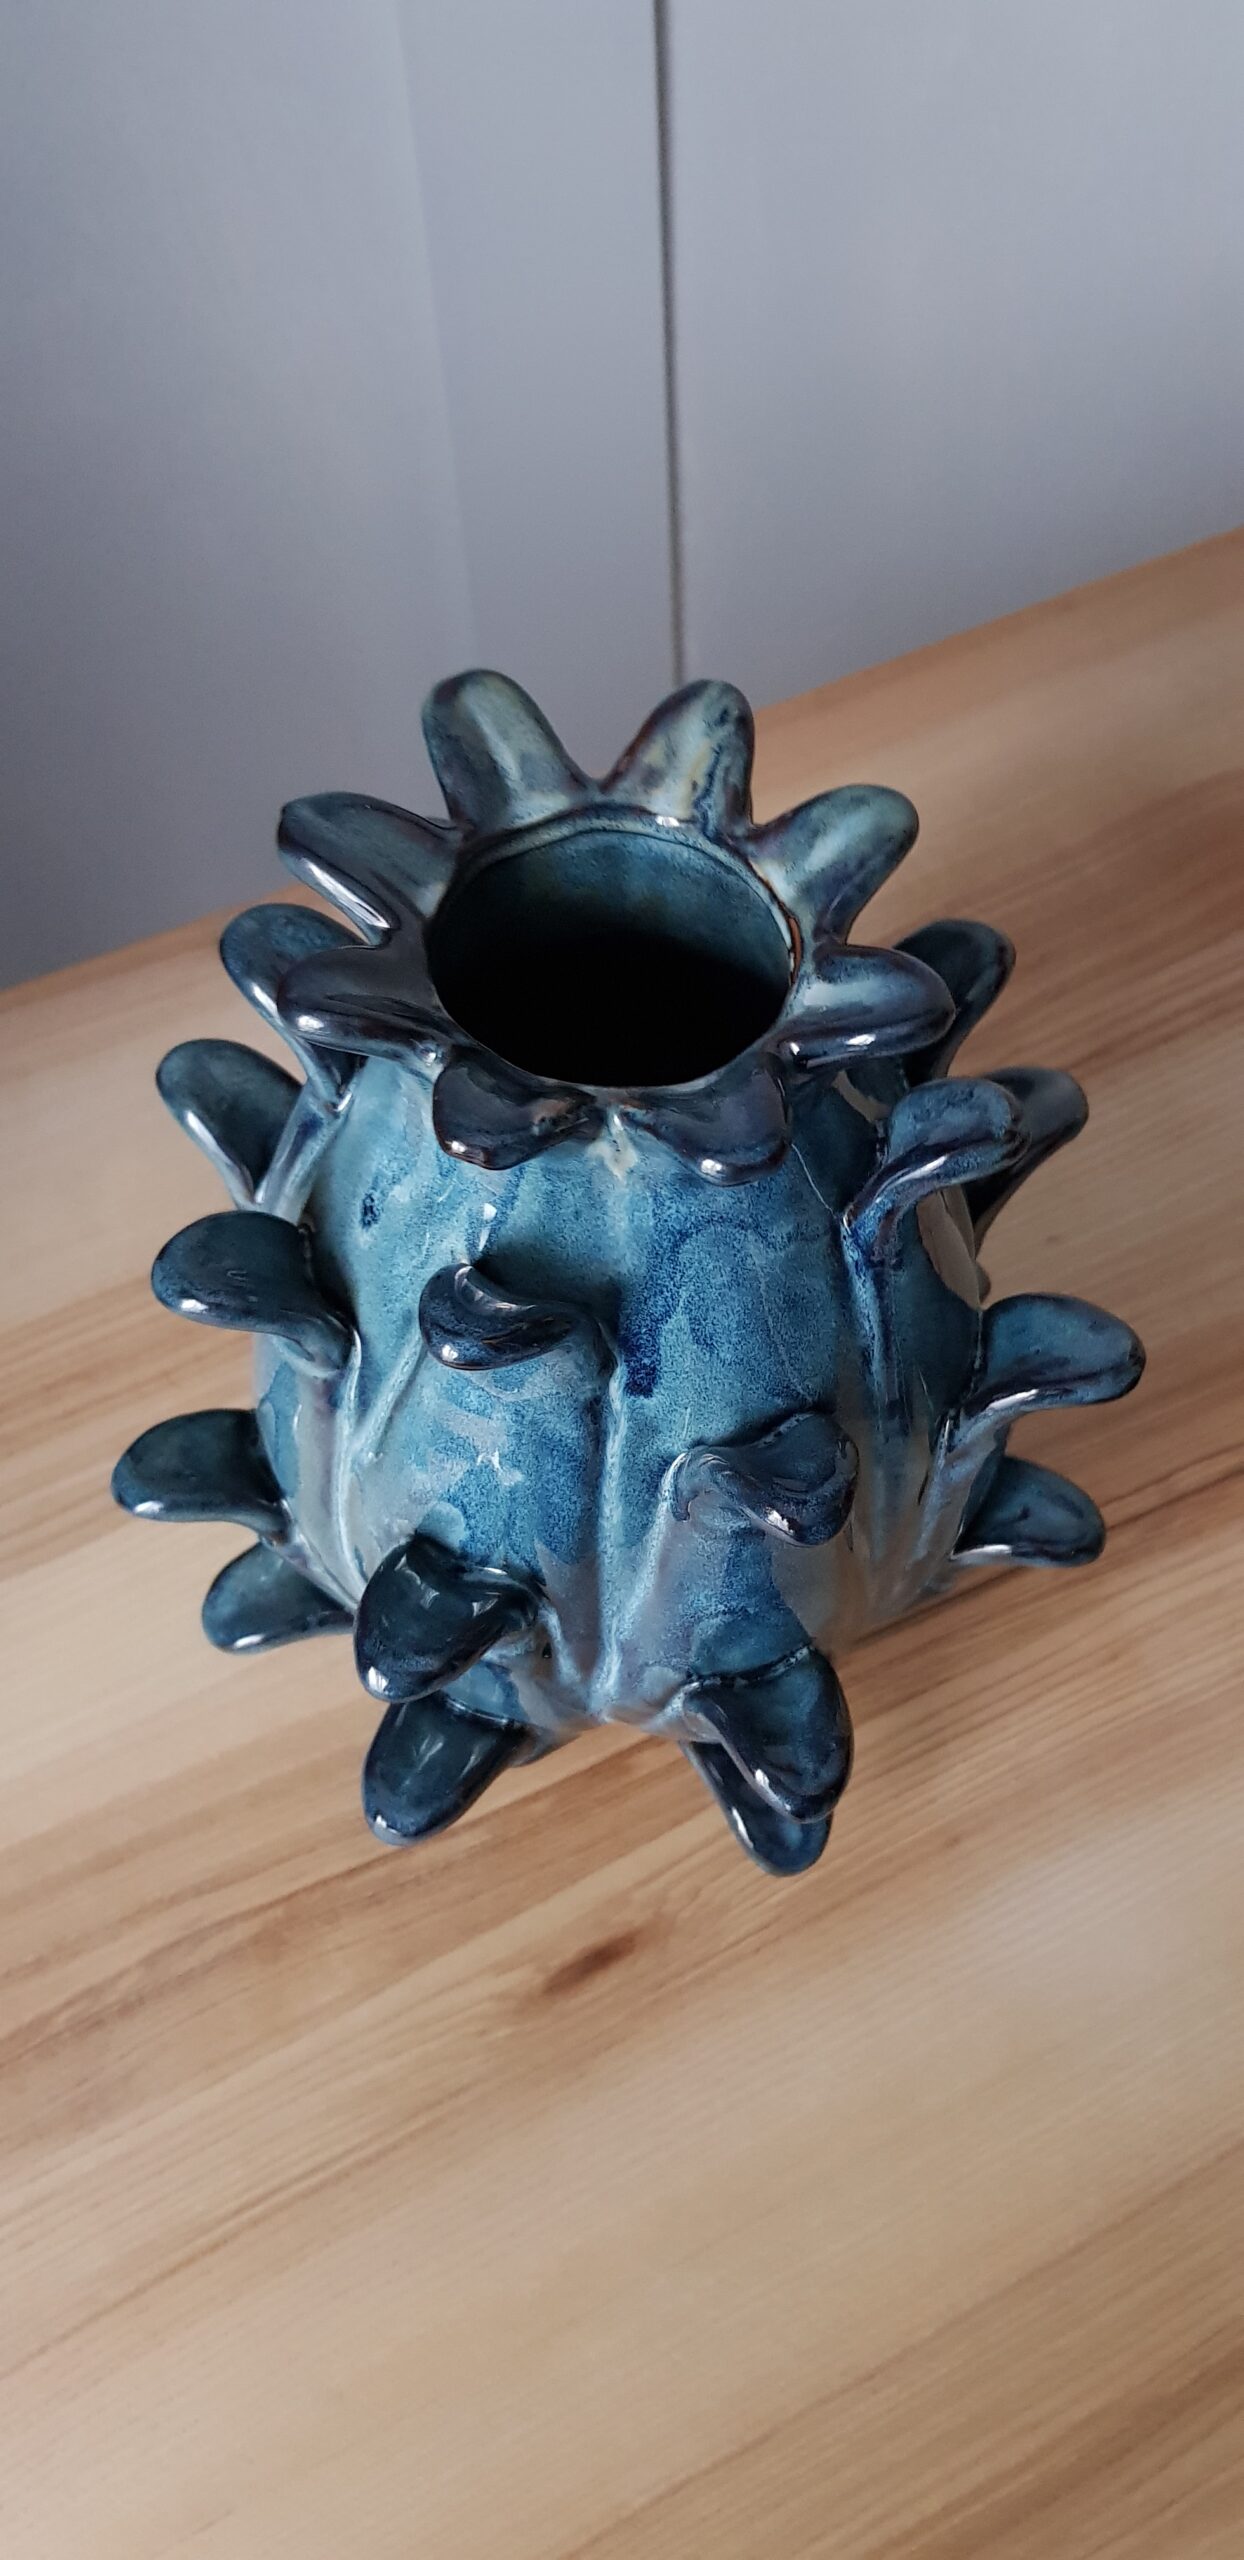 Wazon ceramiczny niebieski Malva